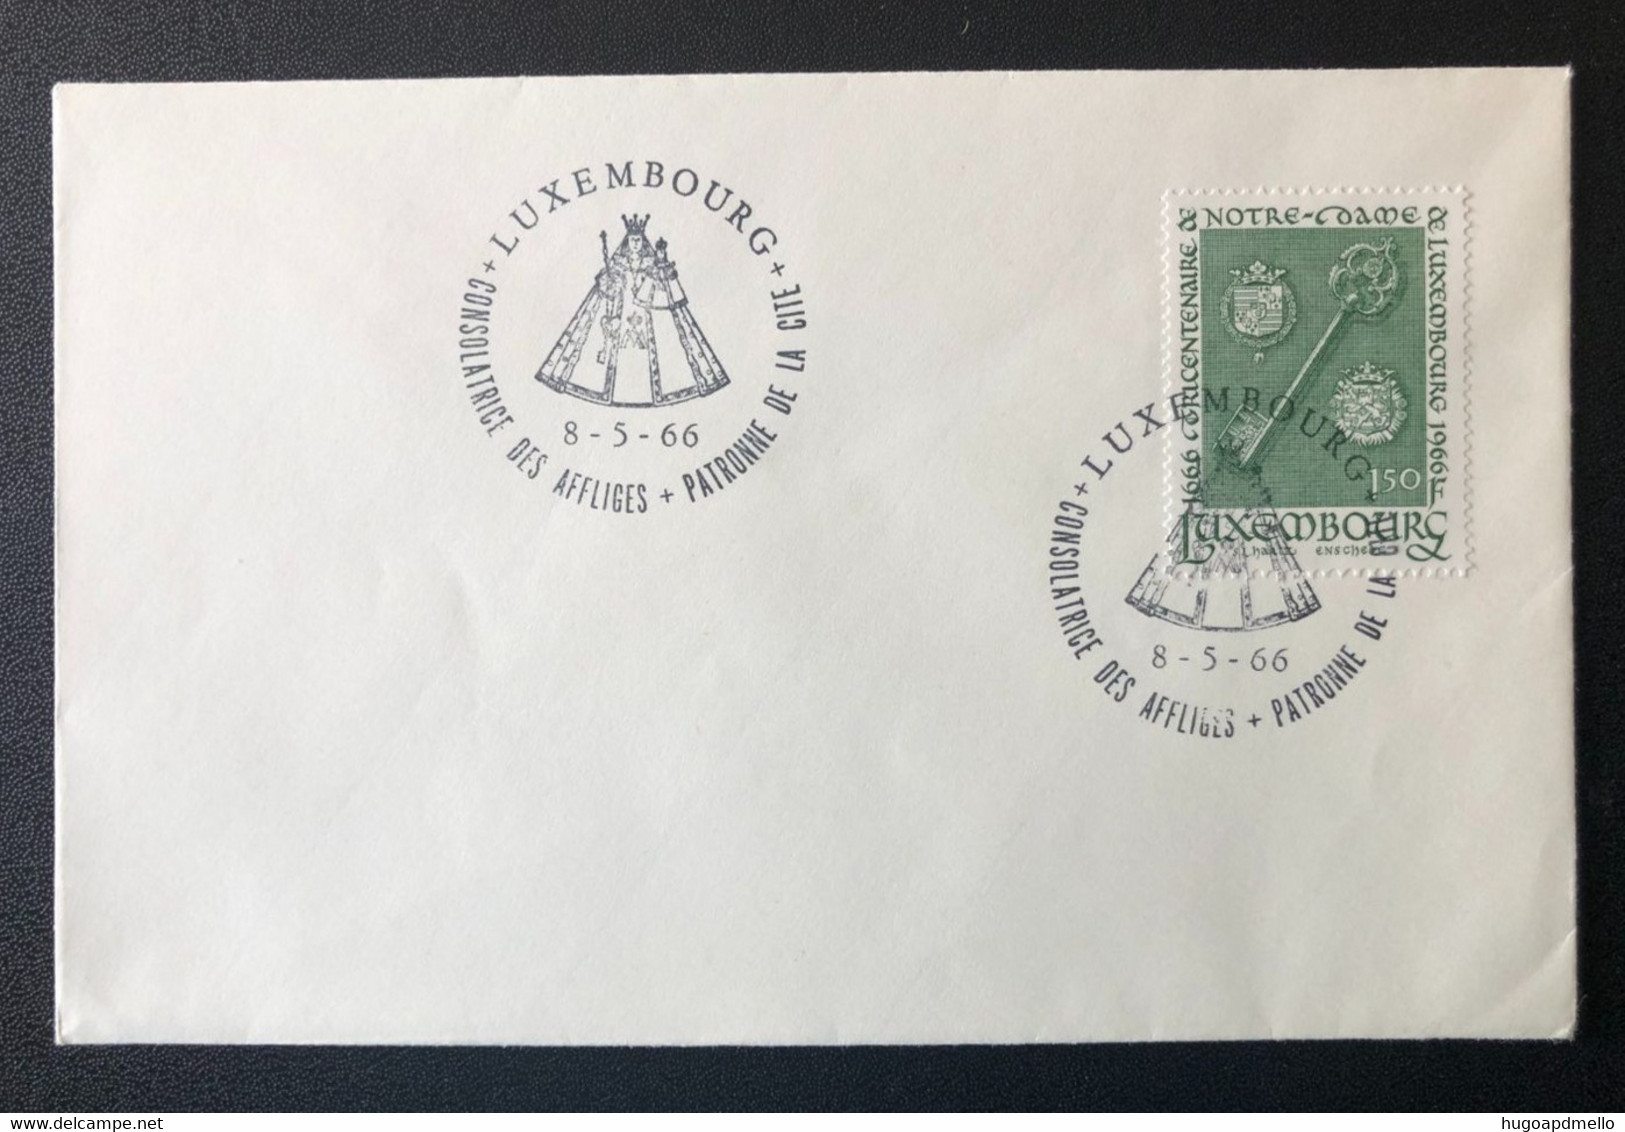 LUXEMBOURG, Uncirculated Cover, « Consolatrice Des Affligés Patronne De La Cité », « Commemorative Postmark », 1966 - Lettres & Documents